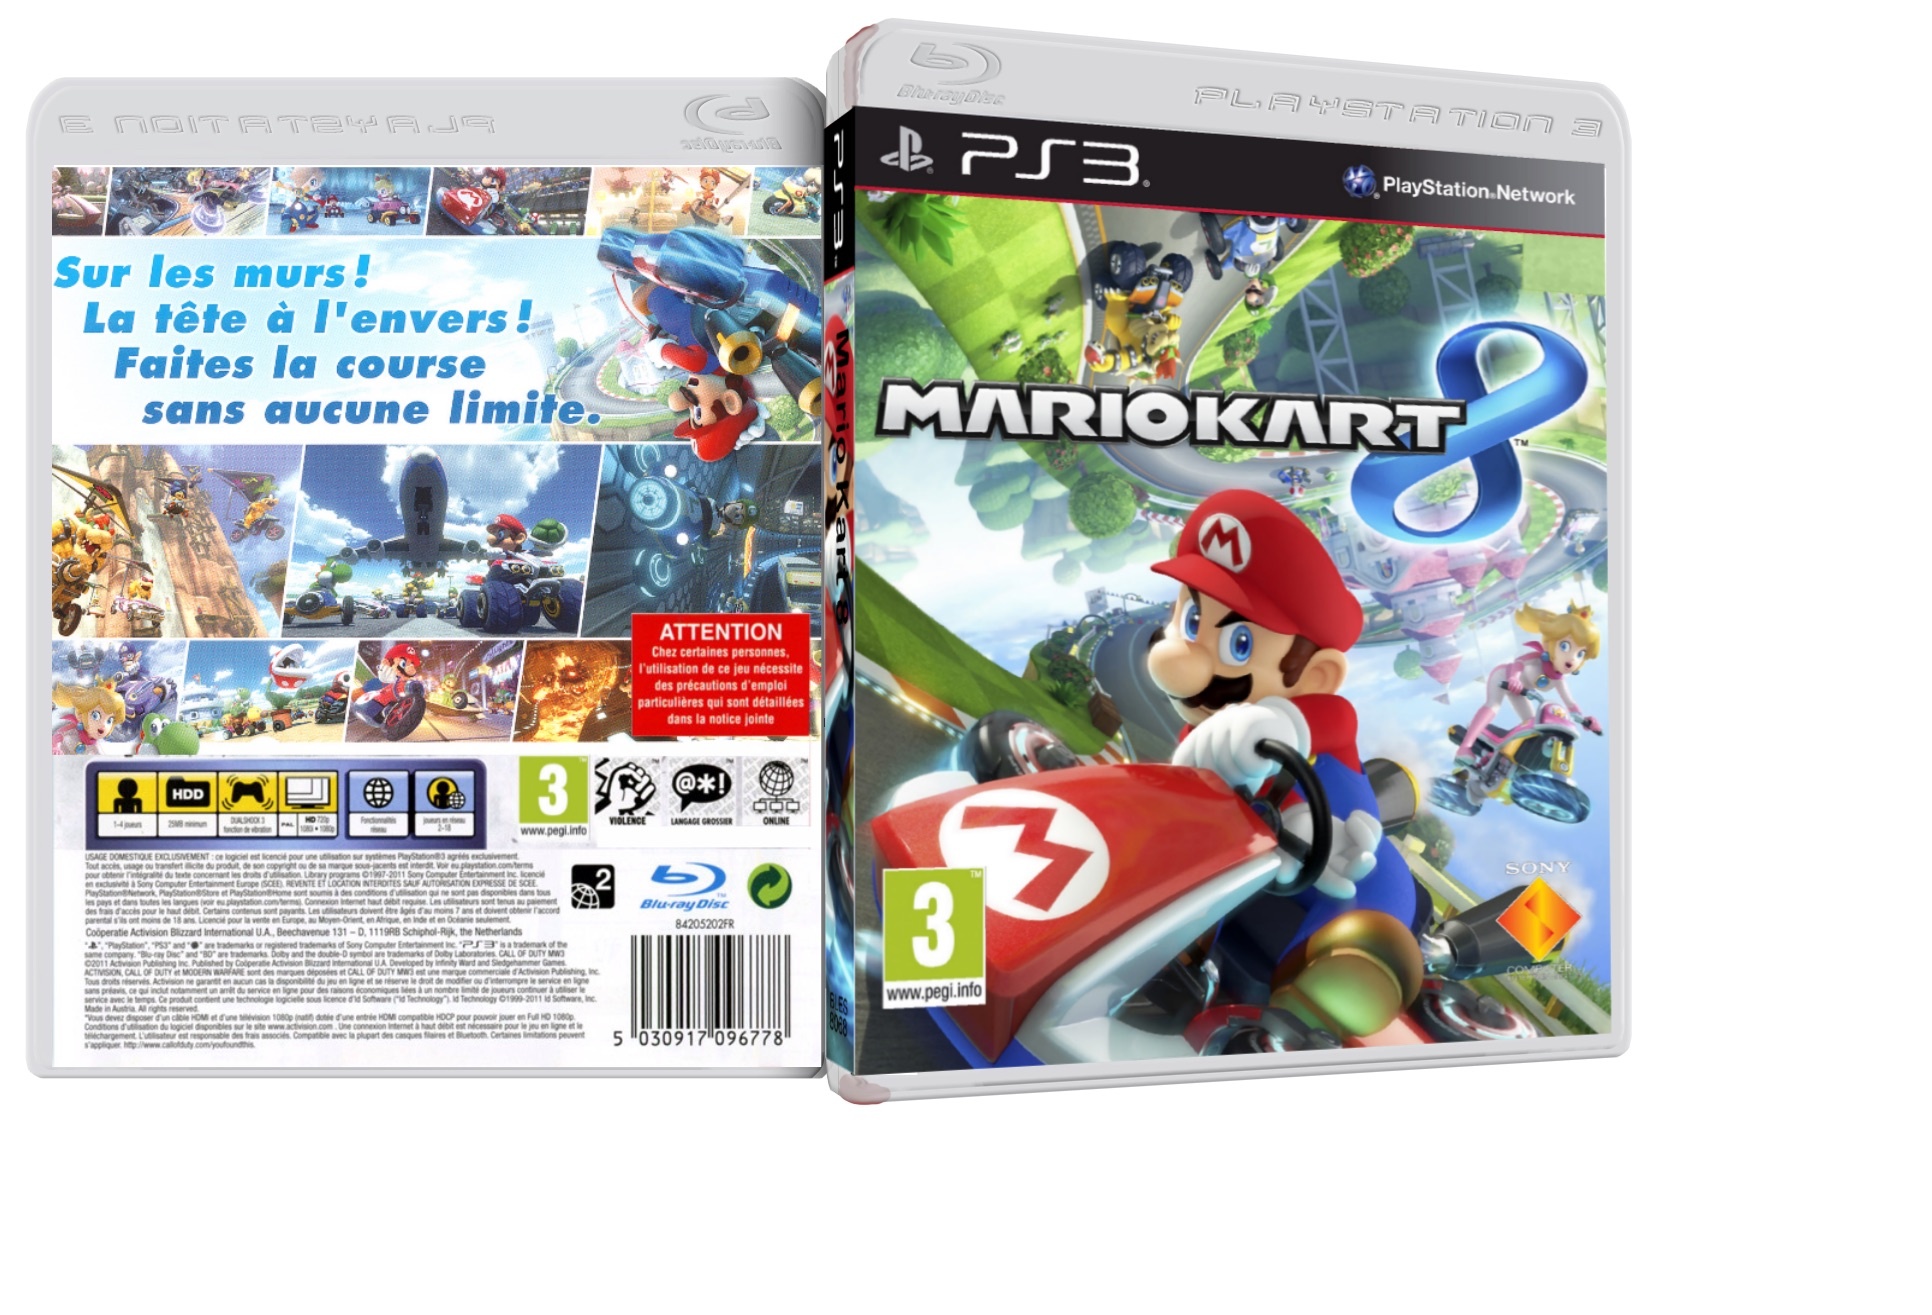 Mario Kart 8 PS3 box cover